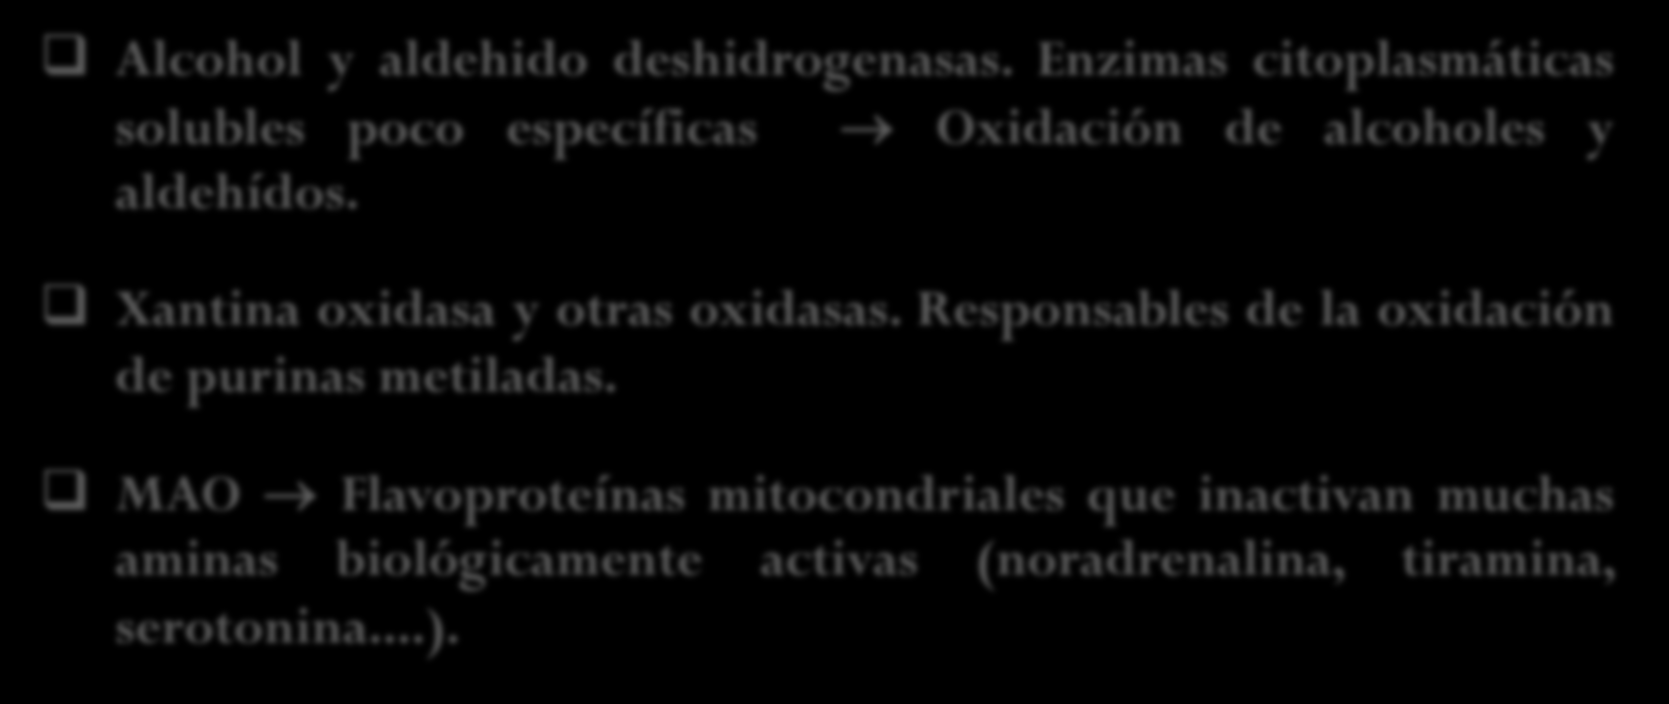 Reacciones oxidativas extramicrosomales Realizadas básicamente Mitocondrias o citosol Alcohol y aldehido deshidrogenasas.